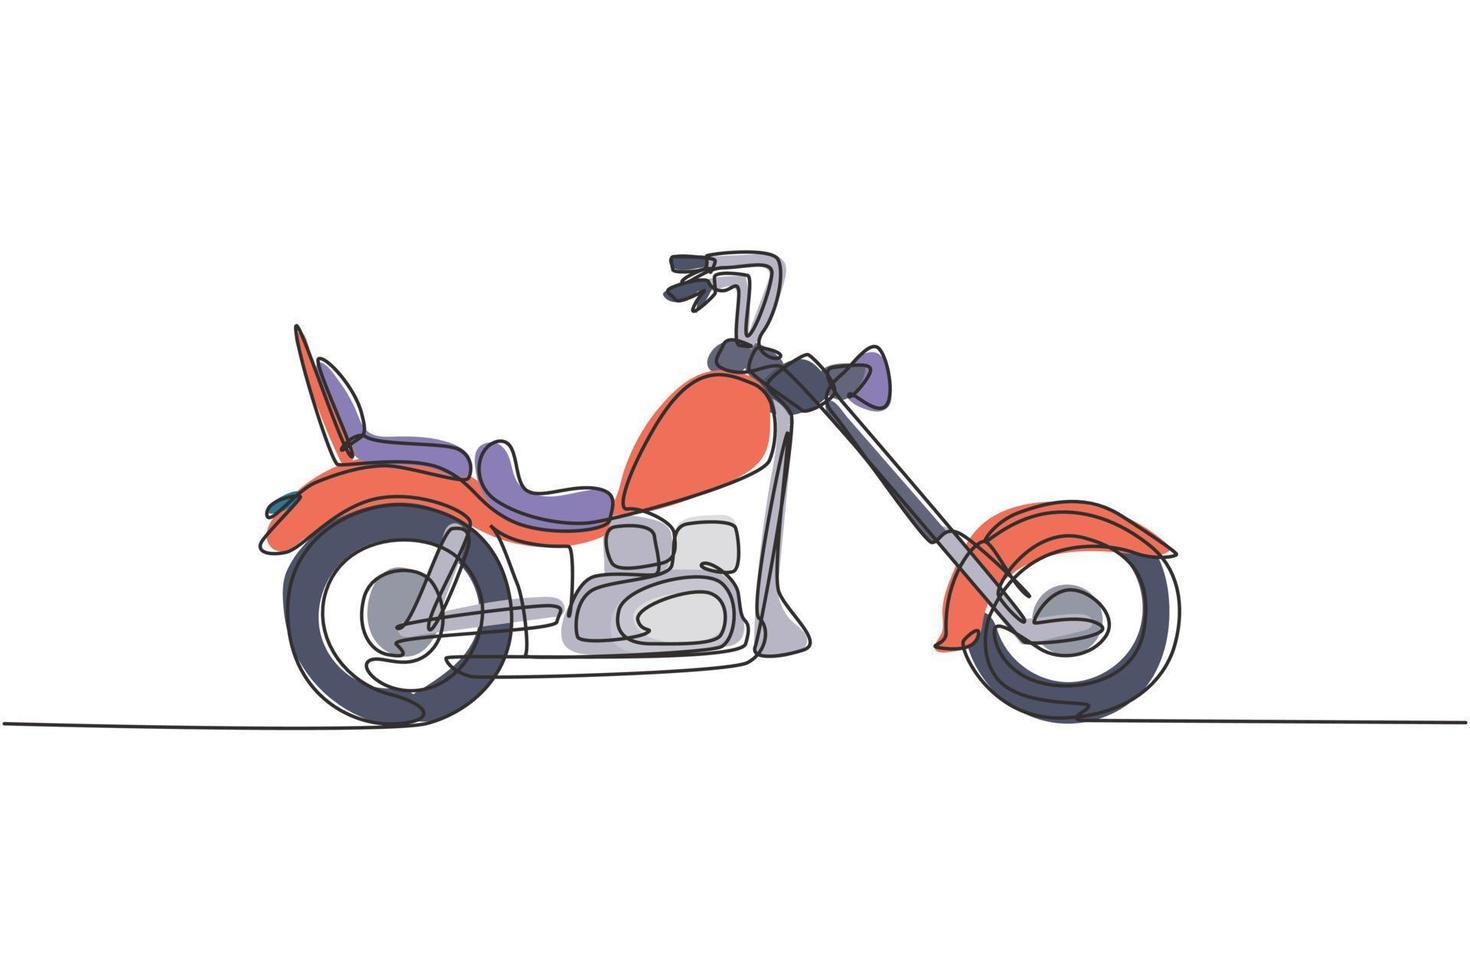 un seul dessin d'une vieille moto chopper rétro vintage. concept de transport de moto vintage ligne continue graphique dessiner illustration vectorielle de conception vecteur